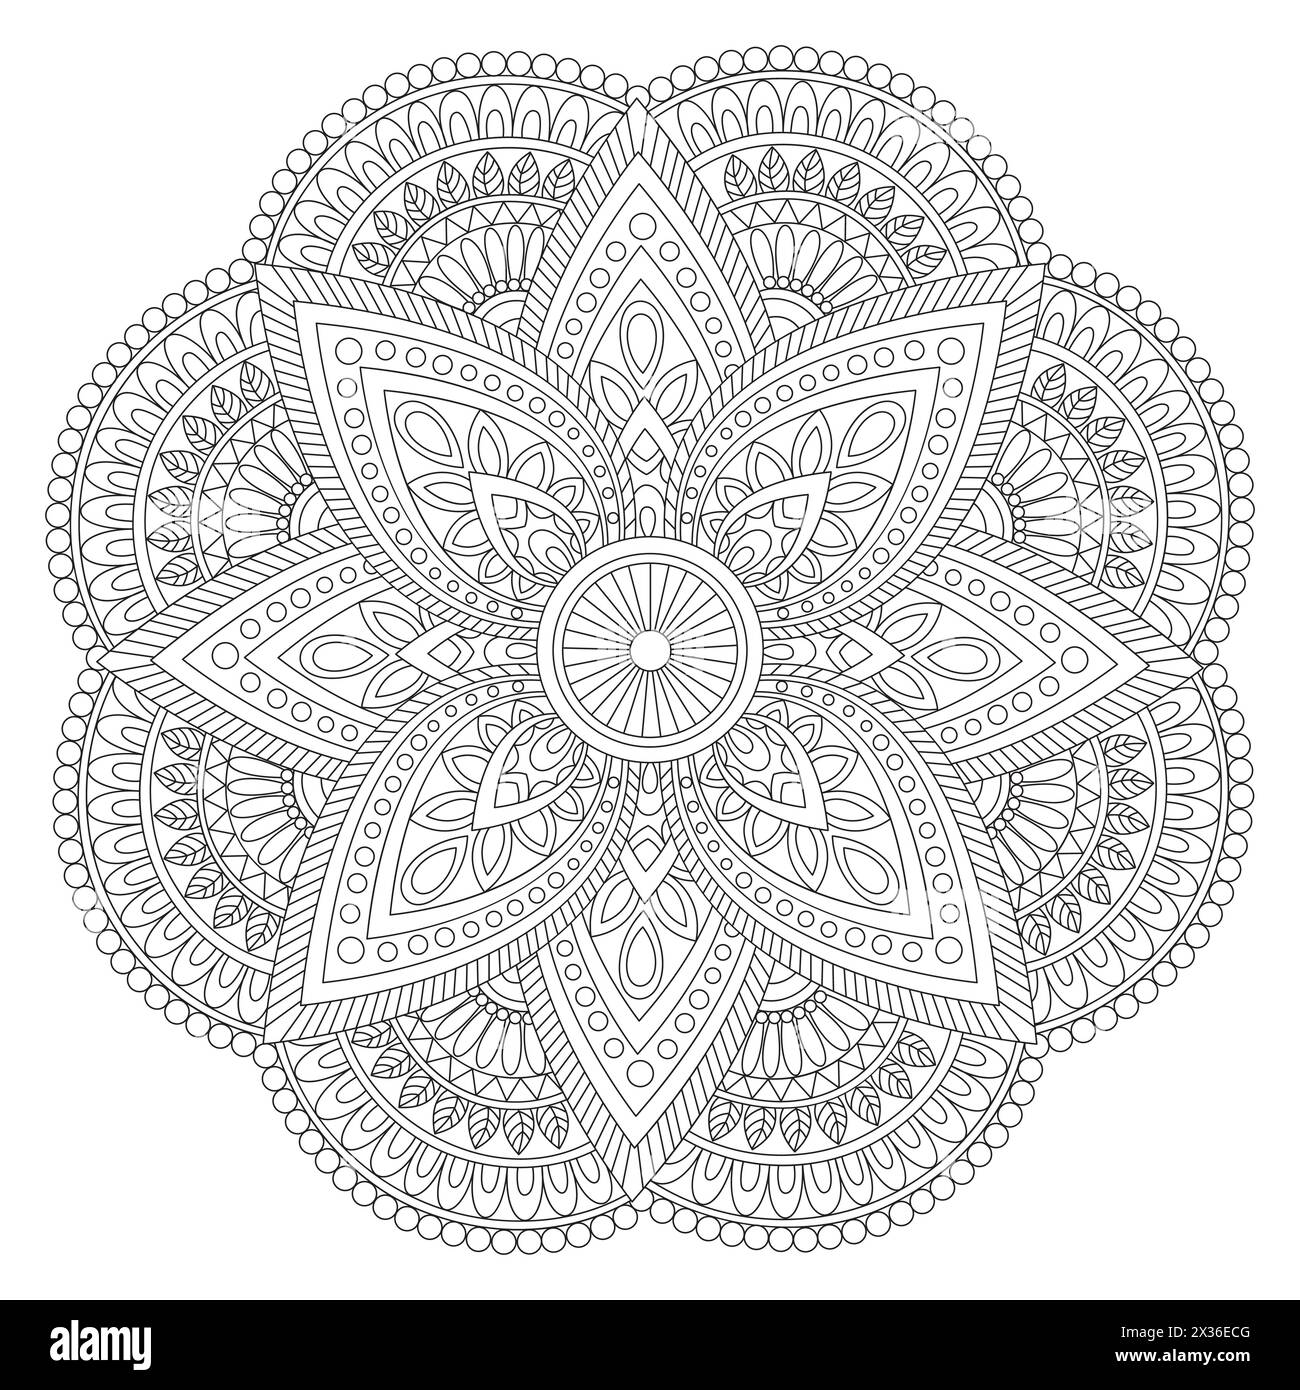 Kreatives, ethnisches Mandala-Design, Vintage-Dekorationselement mit Blumenverzierungen zum Ausmalen des Buches. Stock Vektor